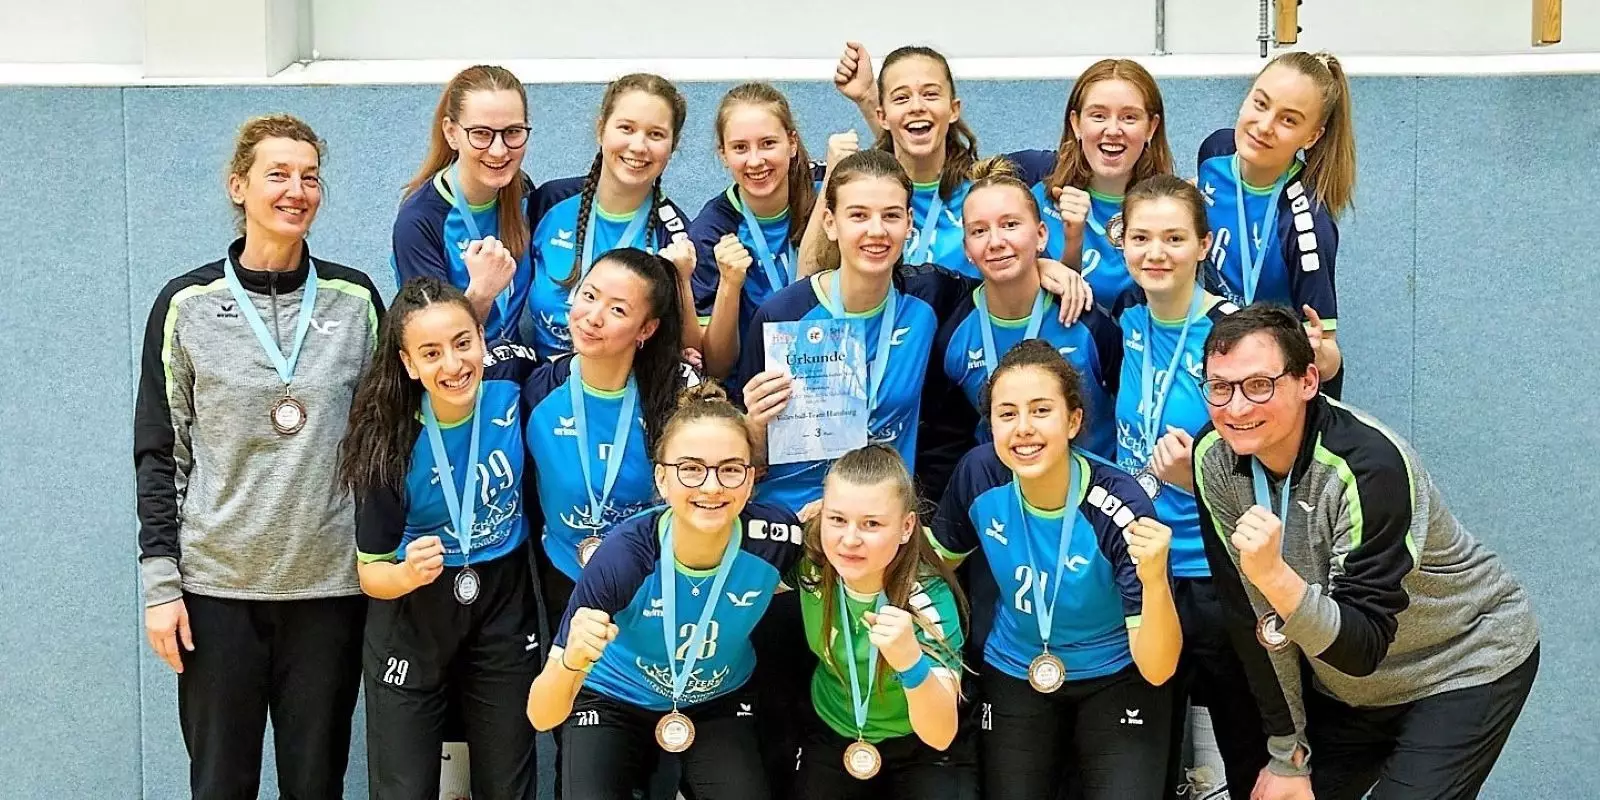 Die U18-Mannschaft des VTH mit ihren Bronzemedaillen. Foto: Andreas Beckmann/VTH